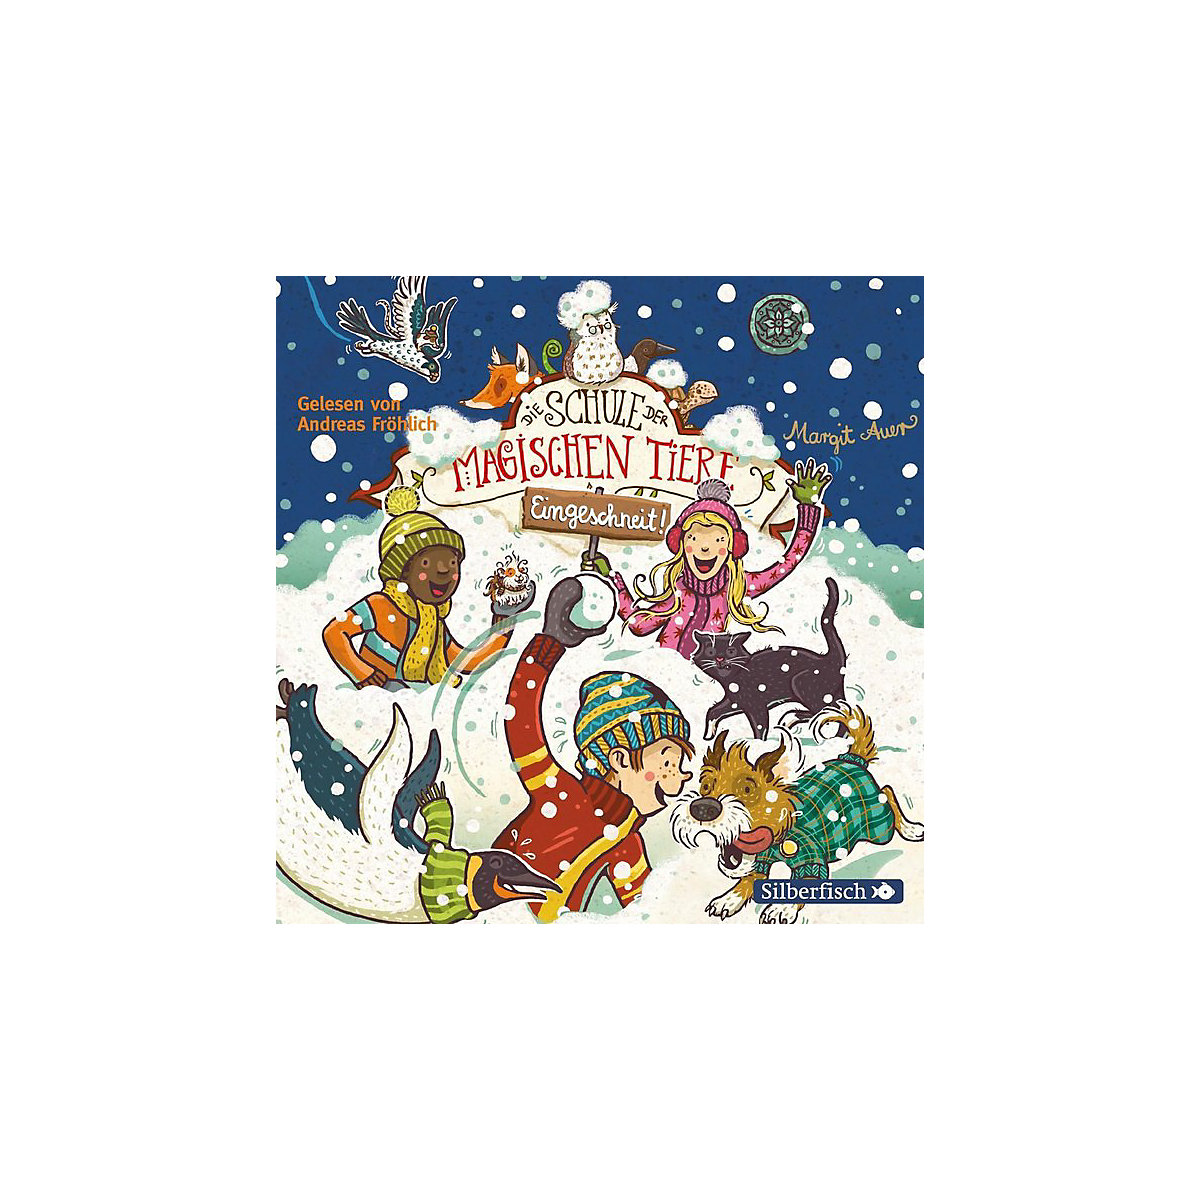 Die Schule der magischen Tiere: Eingeschneit! Ein Winterabenteuer 2 Audio-CDs